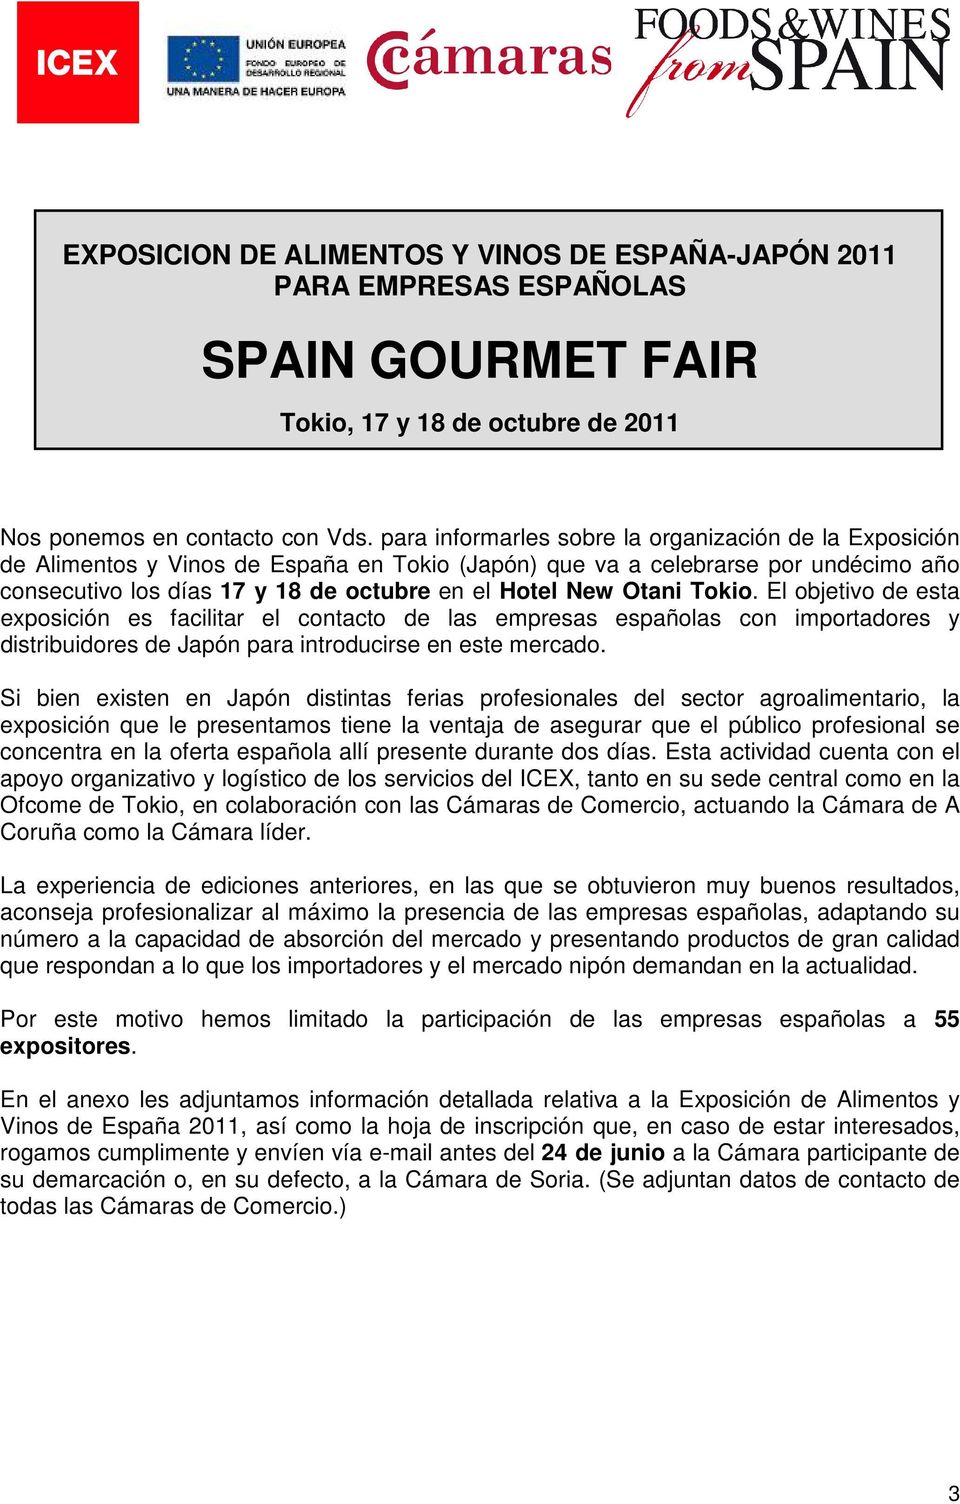 Otani Tokio. El objetivo de esta exposición es facilitar el contacto de las empresas españolas con importadores y distribuidores de Japón para introducirse en este mercado.